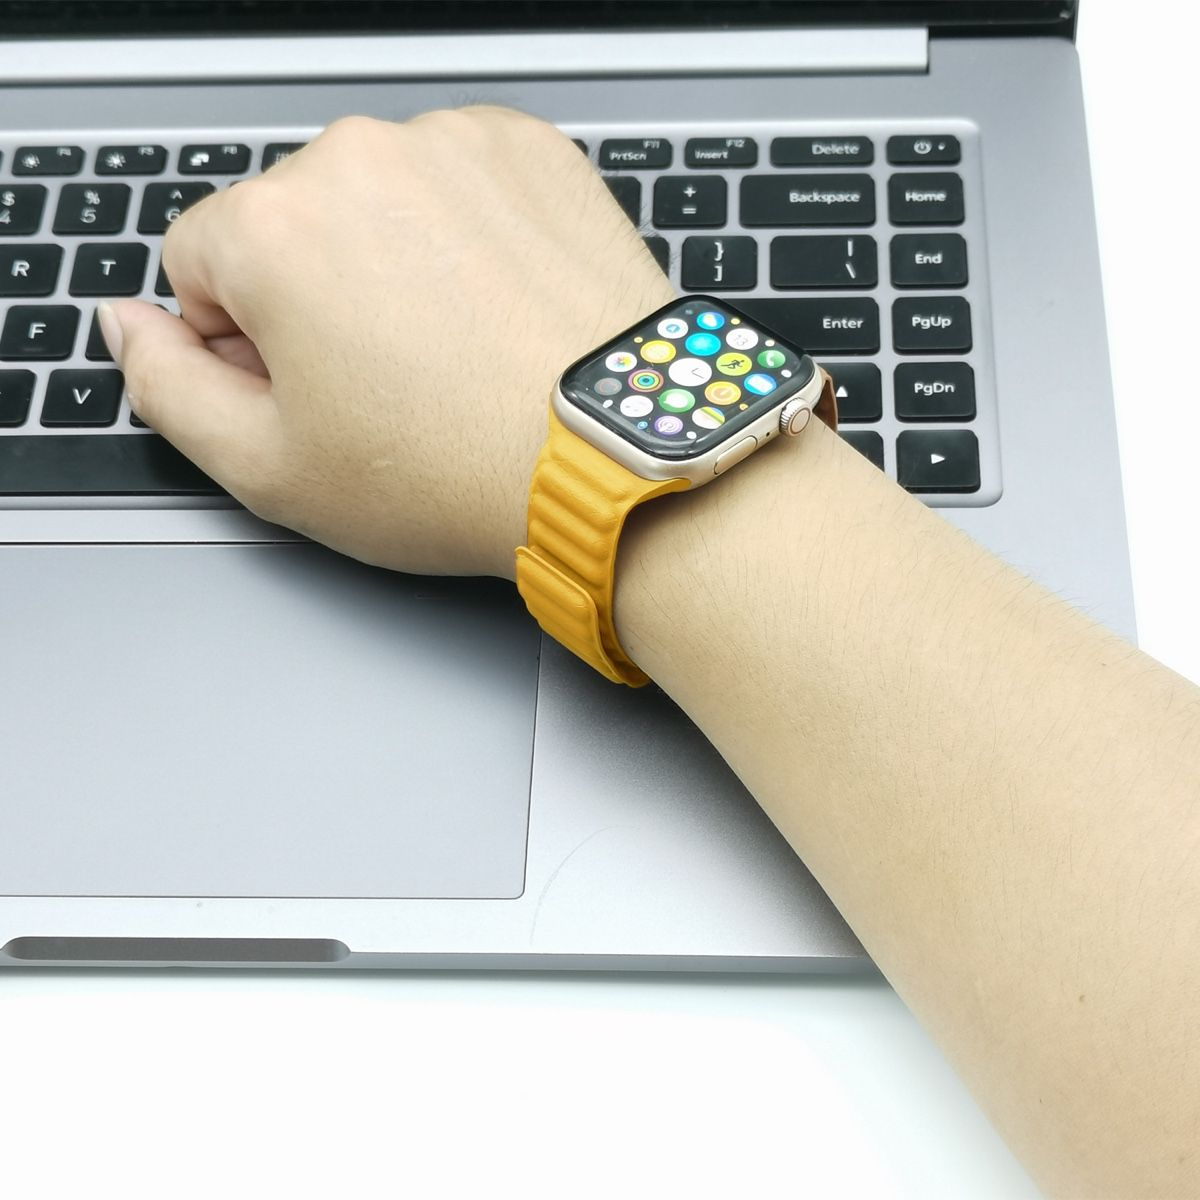 Des photos supposées du nouveau bracelet FineWoven de l'Apple Watch